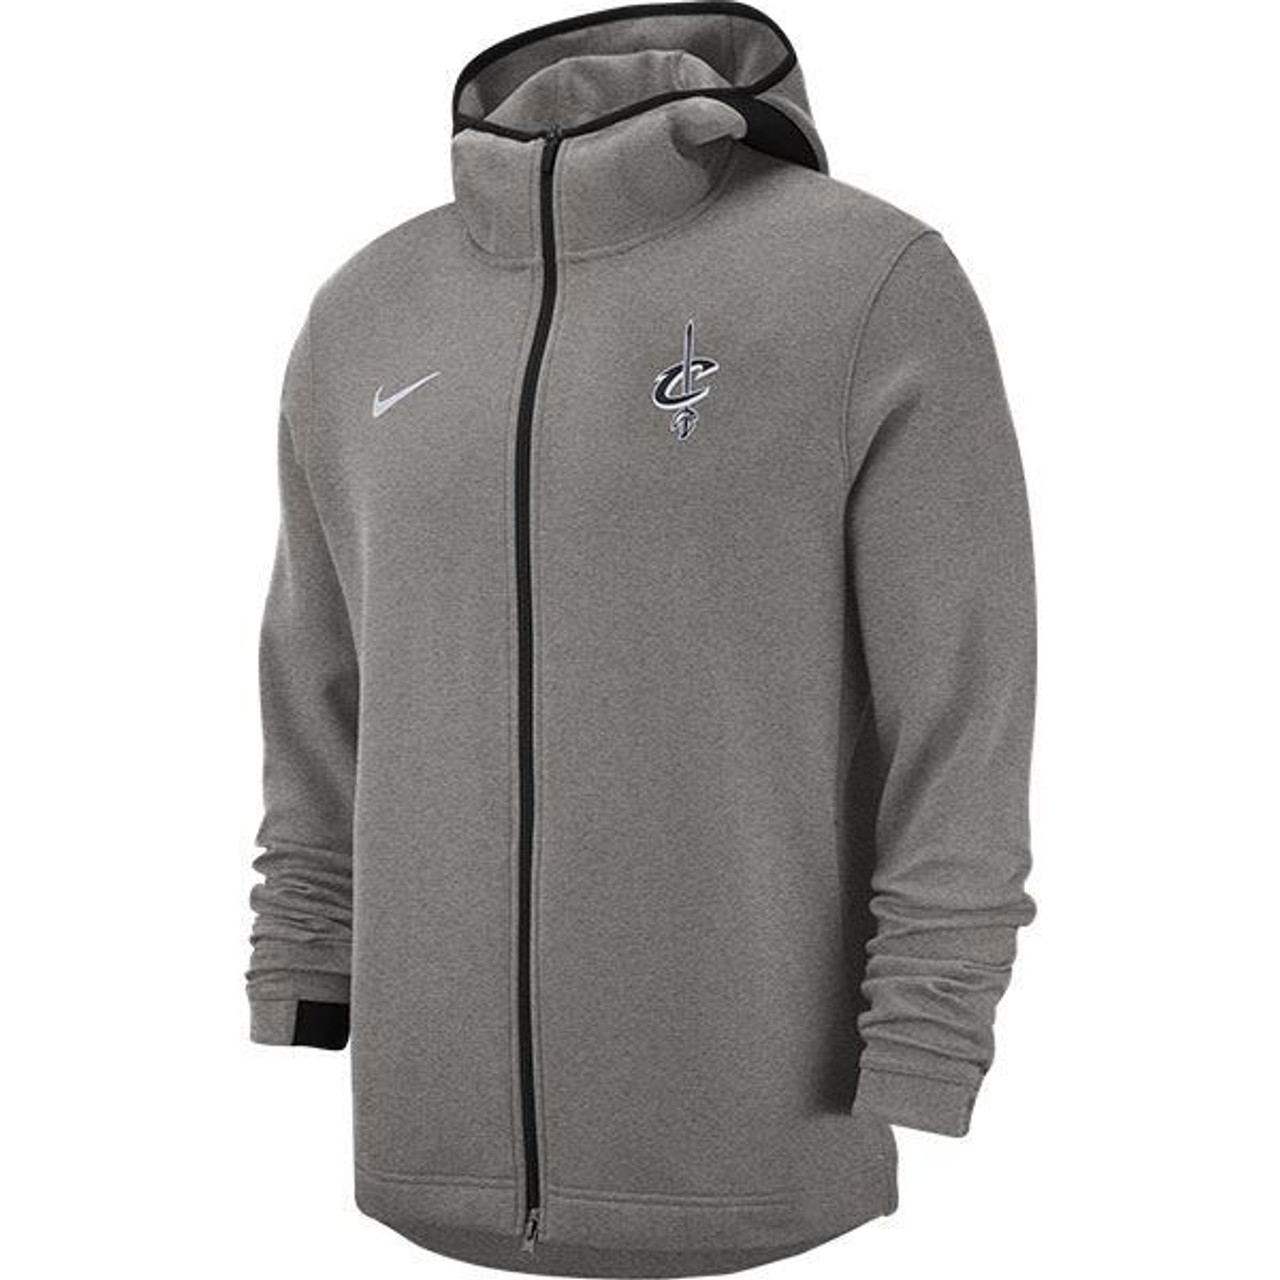 gray nike zip up hoodie